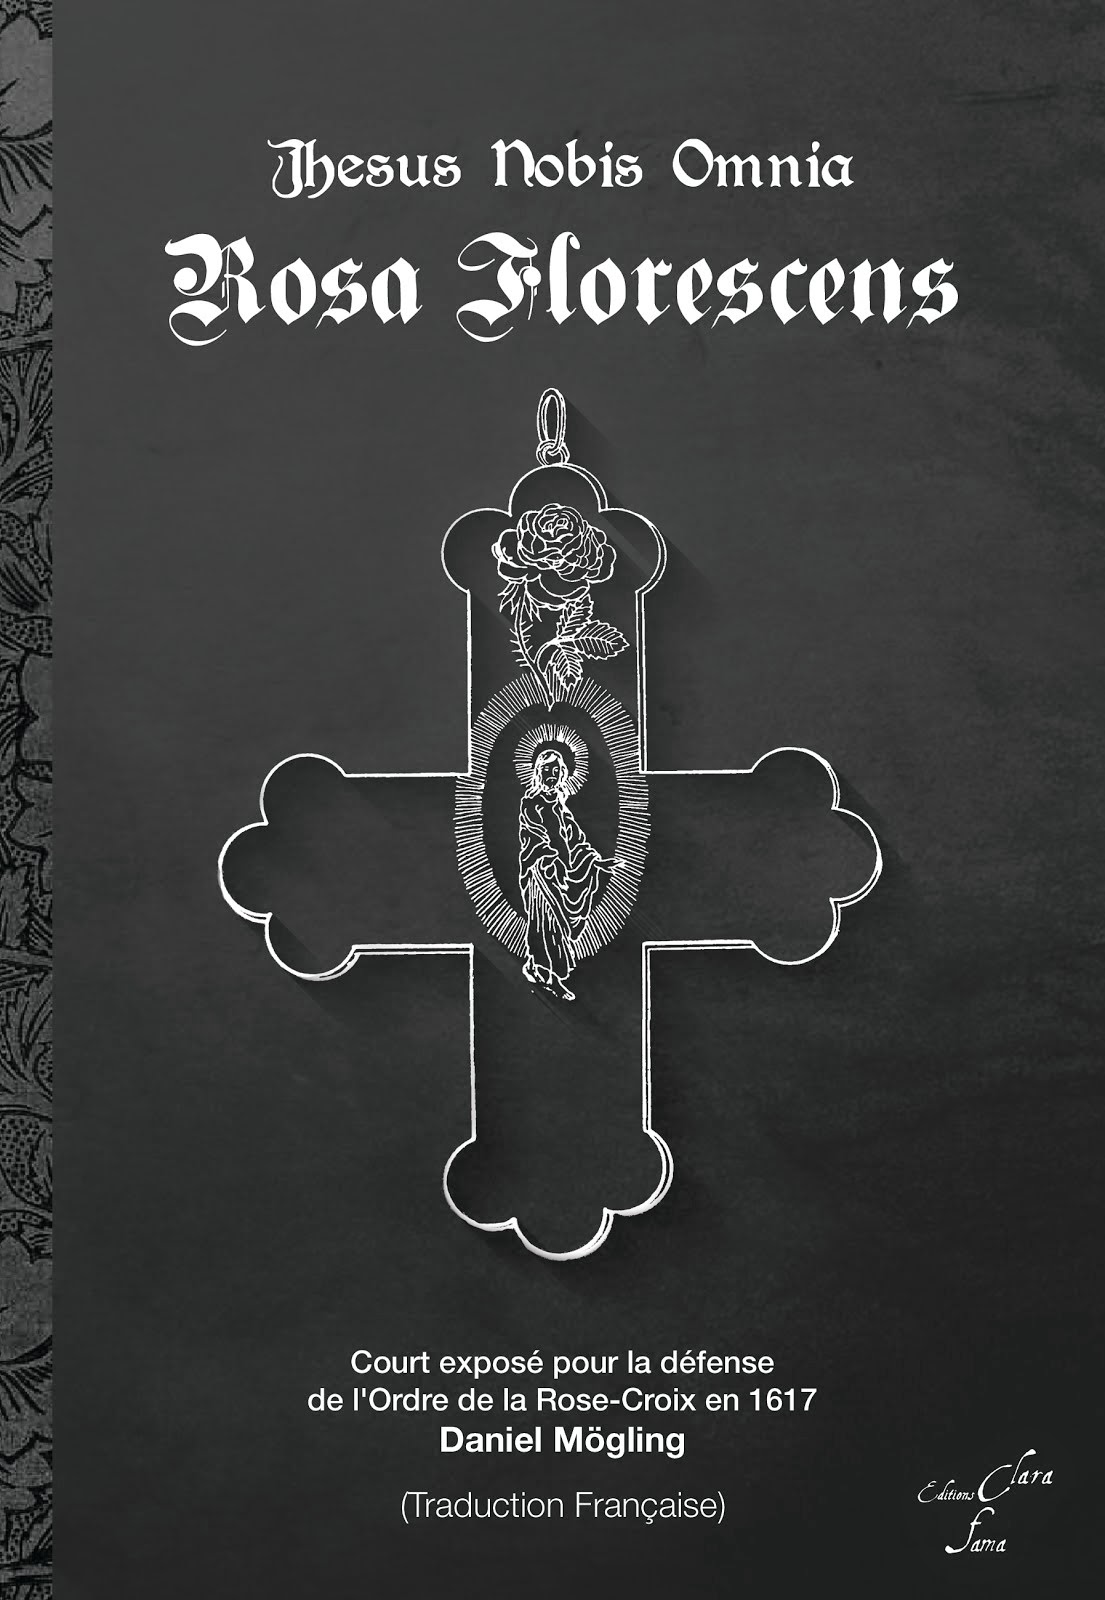 Rosa Florescens